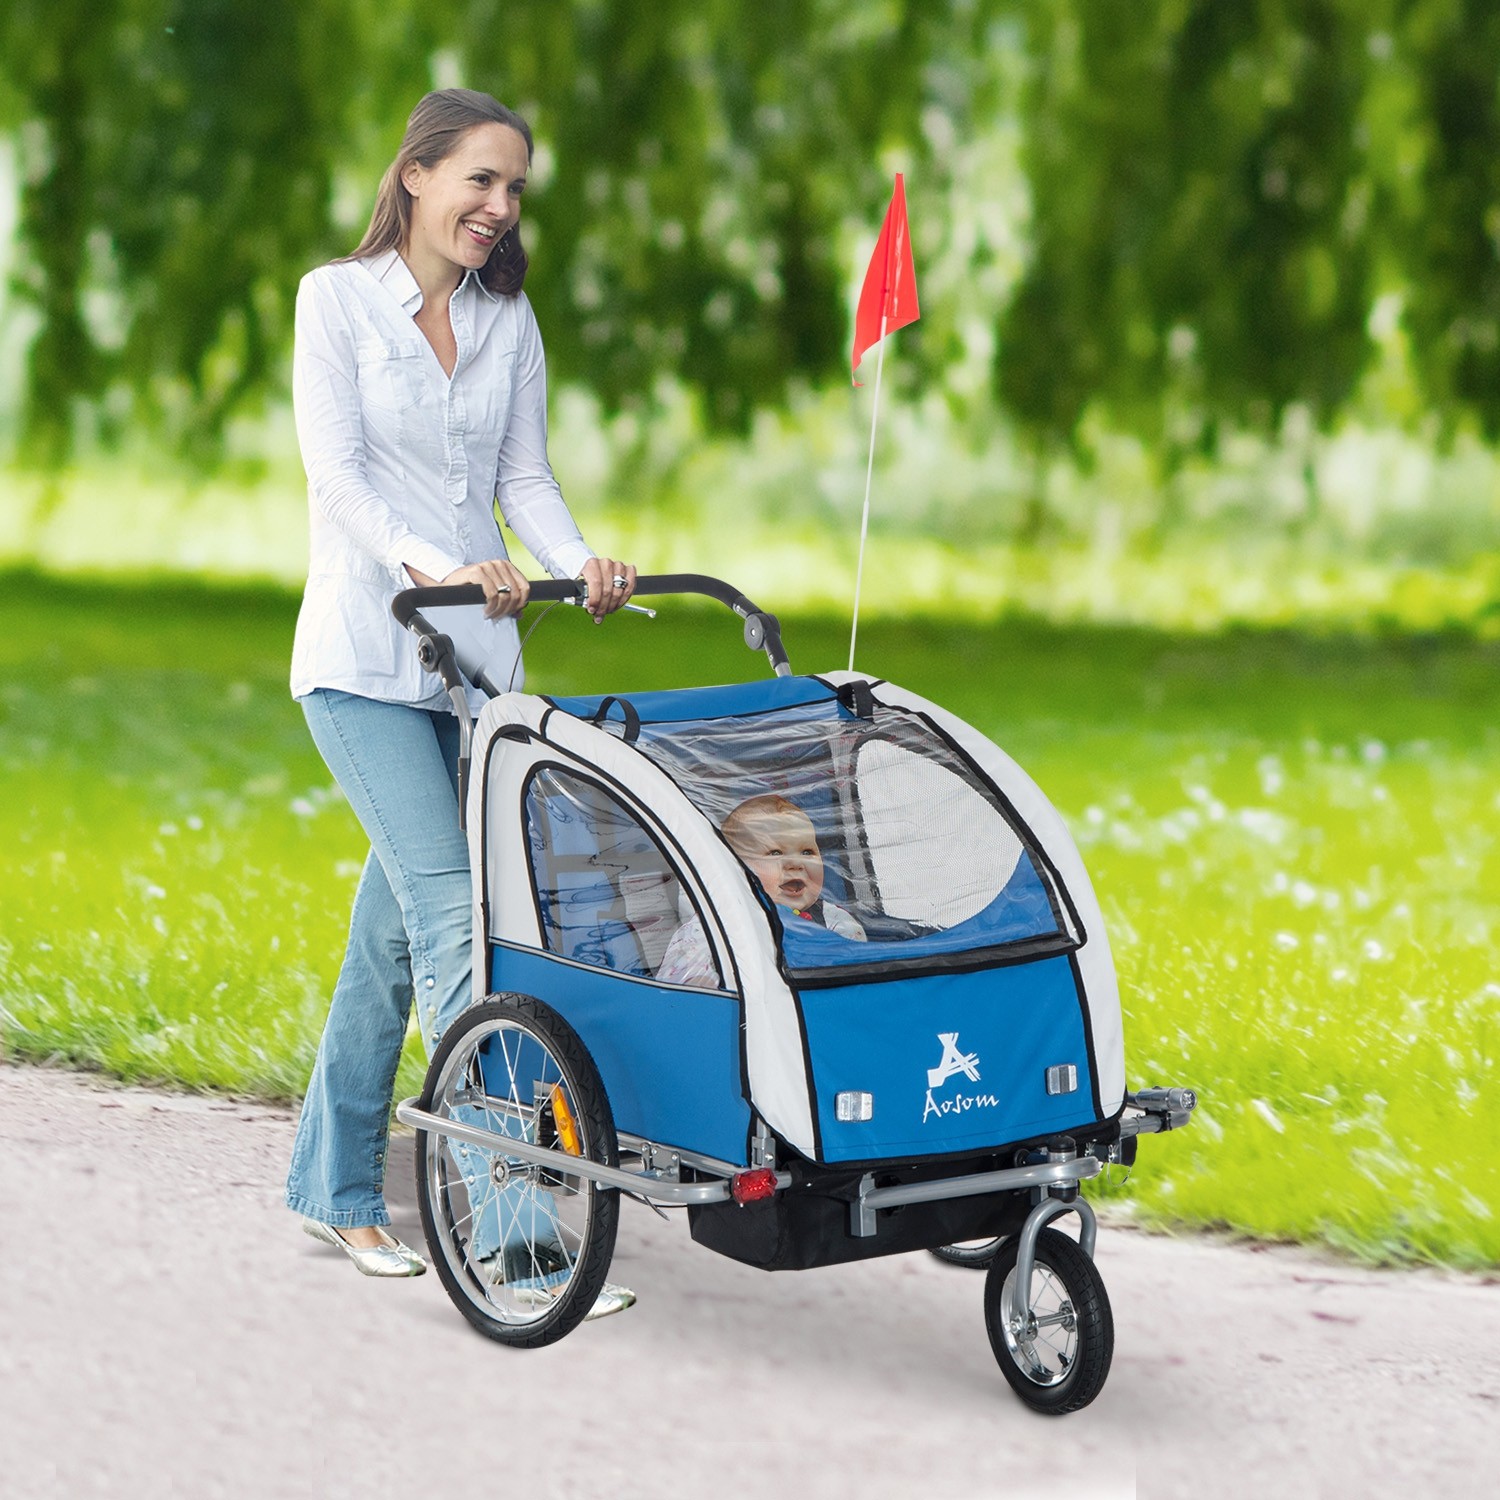 stroller buying guide - aosom baby bike trailer stroller